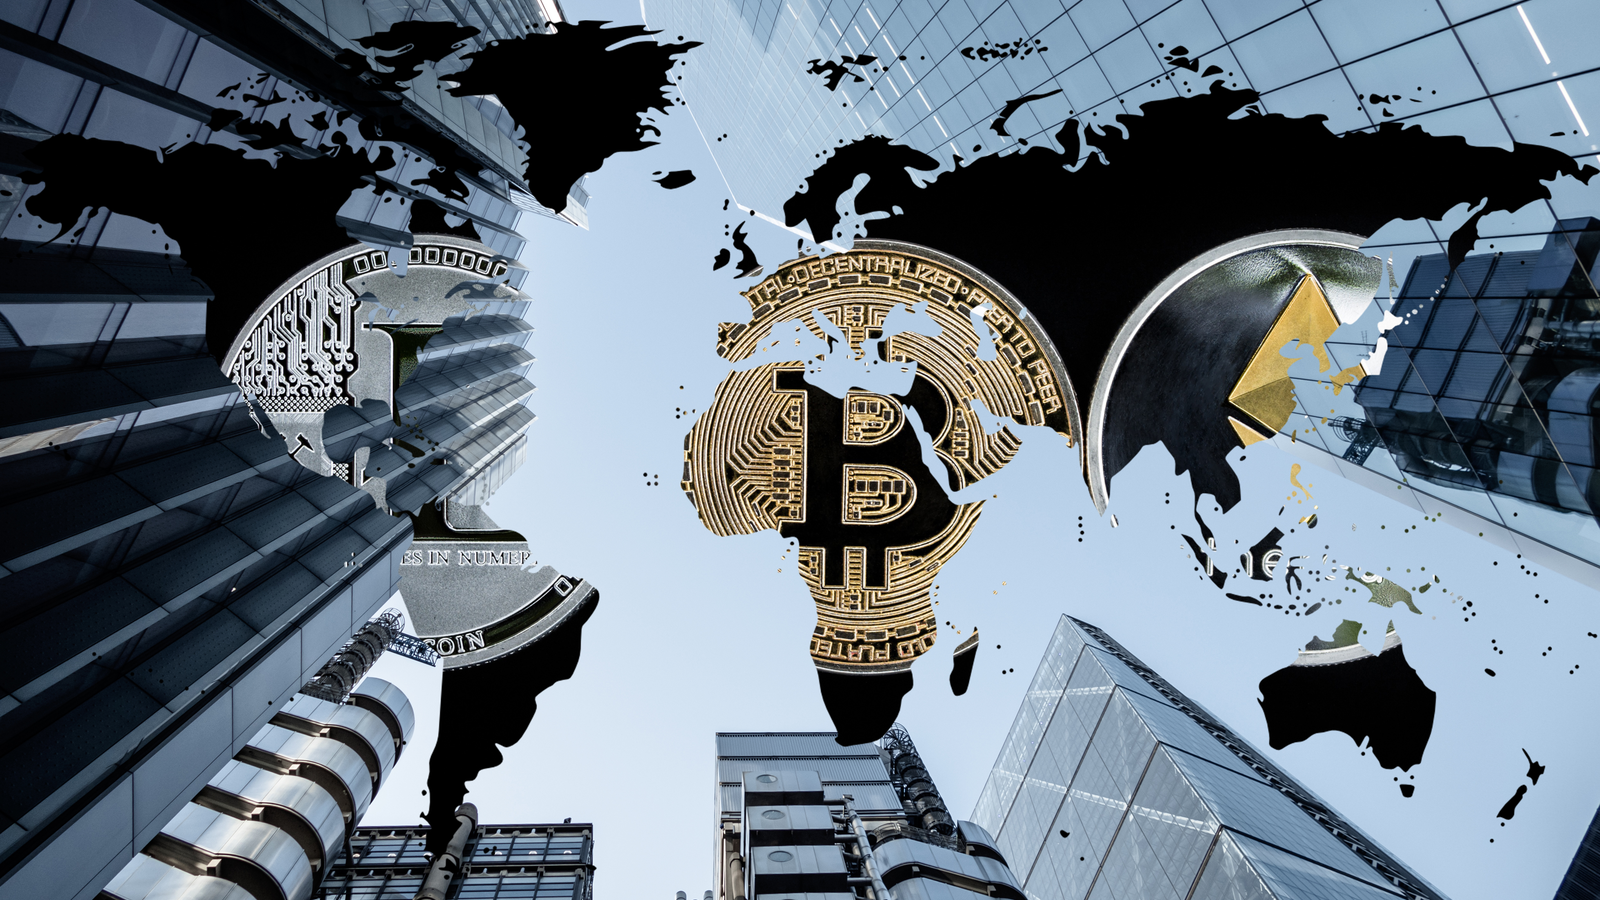 Une image de diverses représentations de crypto-monnaie superposées sur une carte du monde, avec des gratte-ciel en arrière-plan.